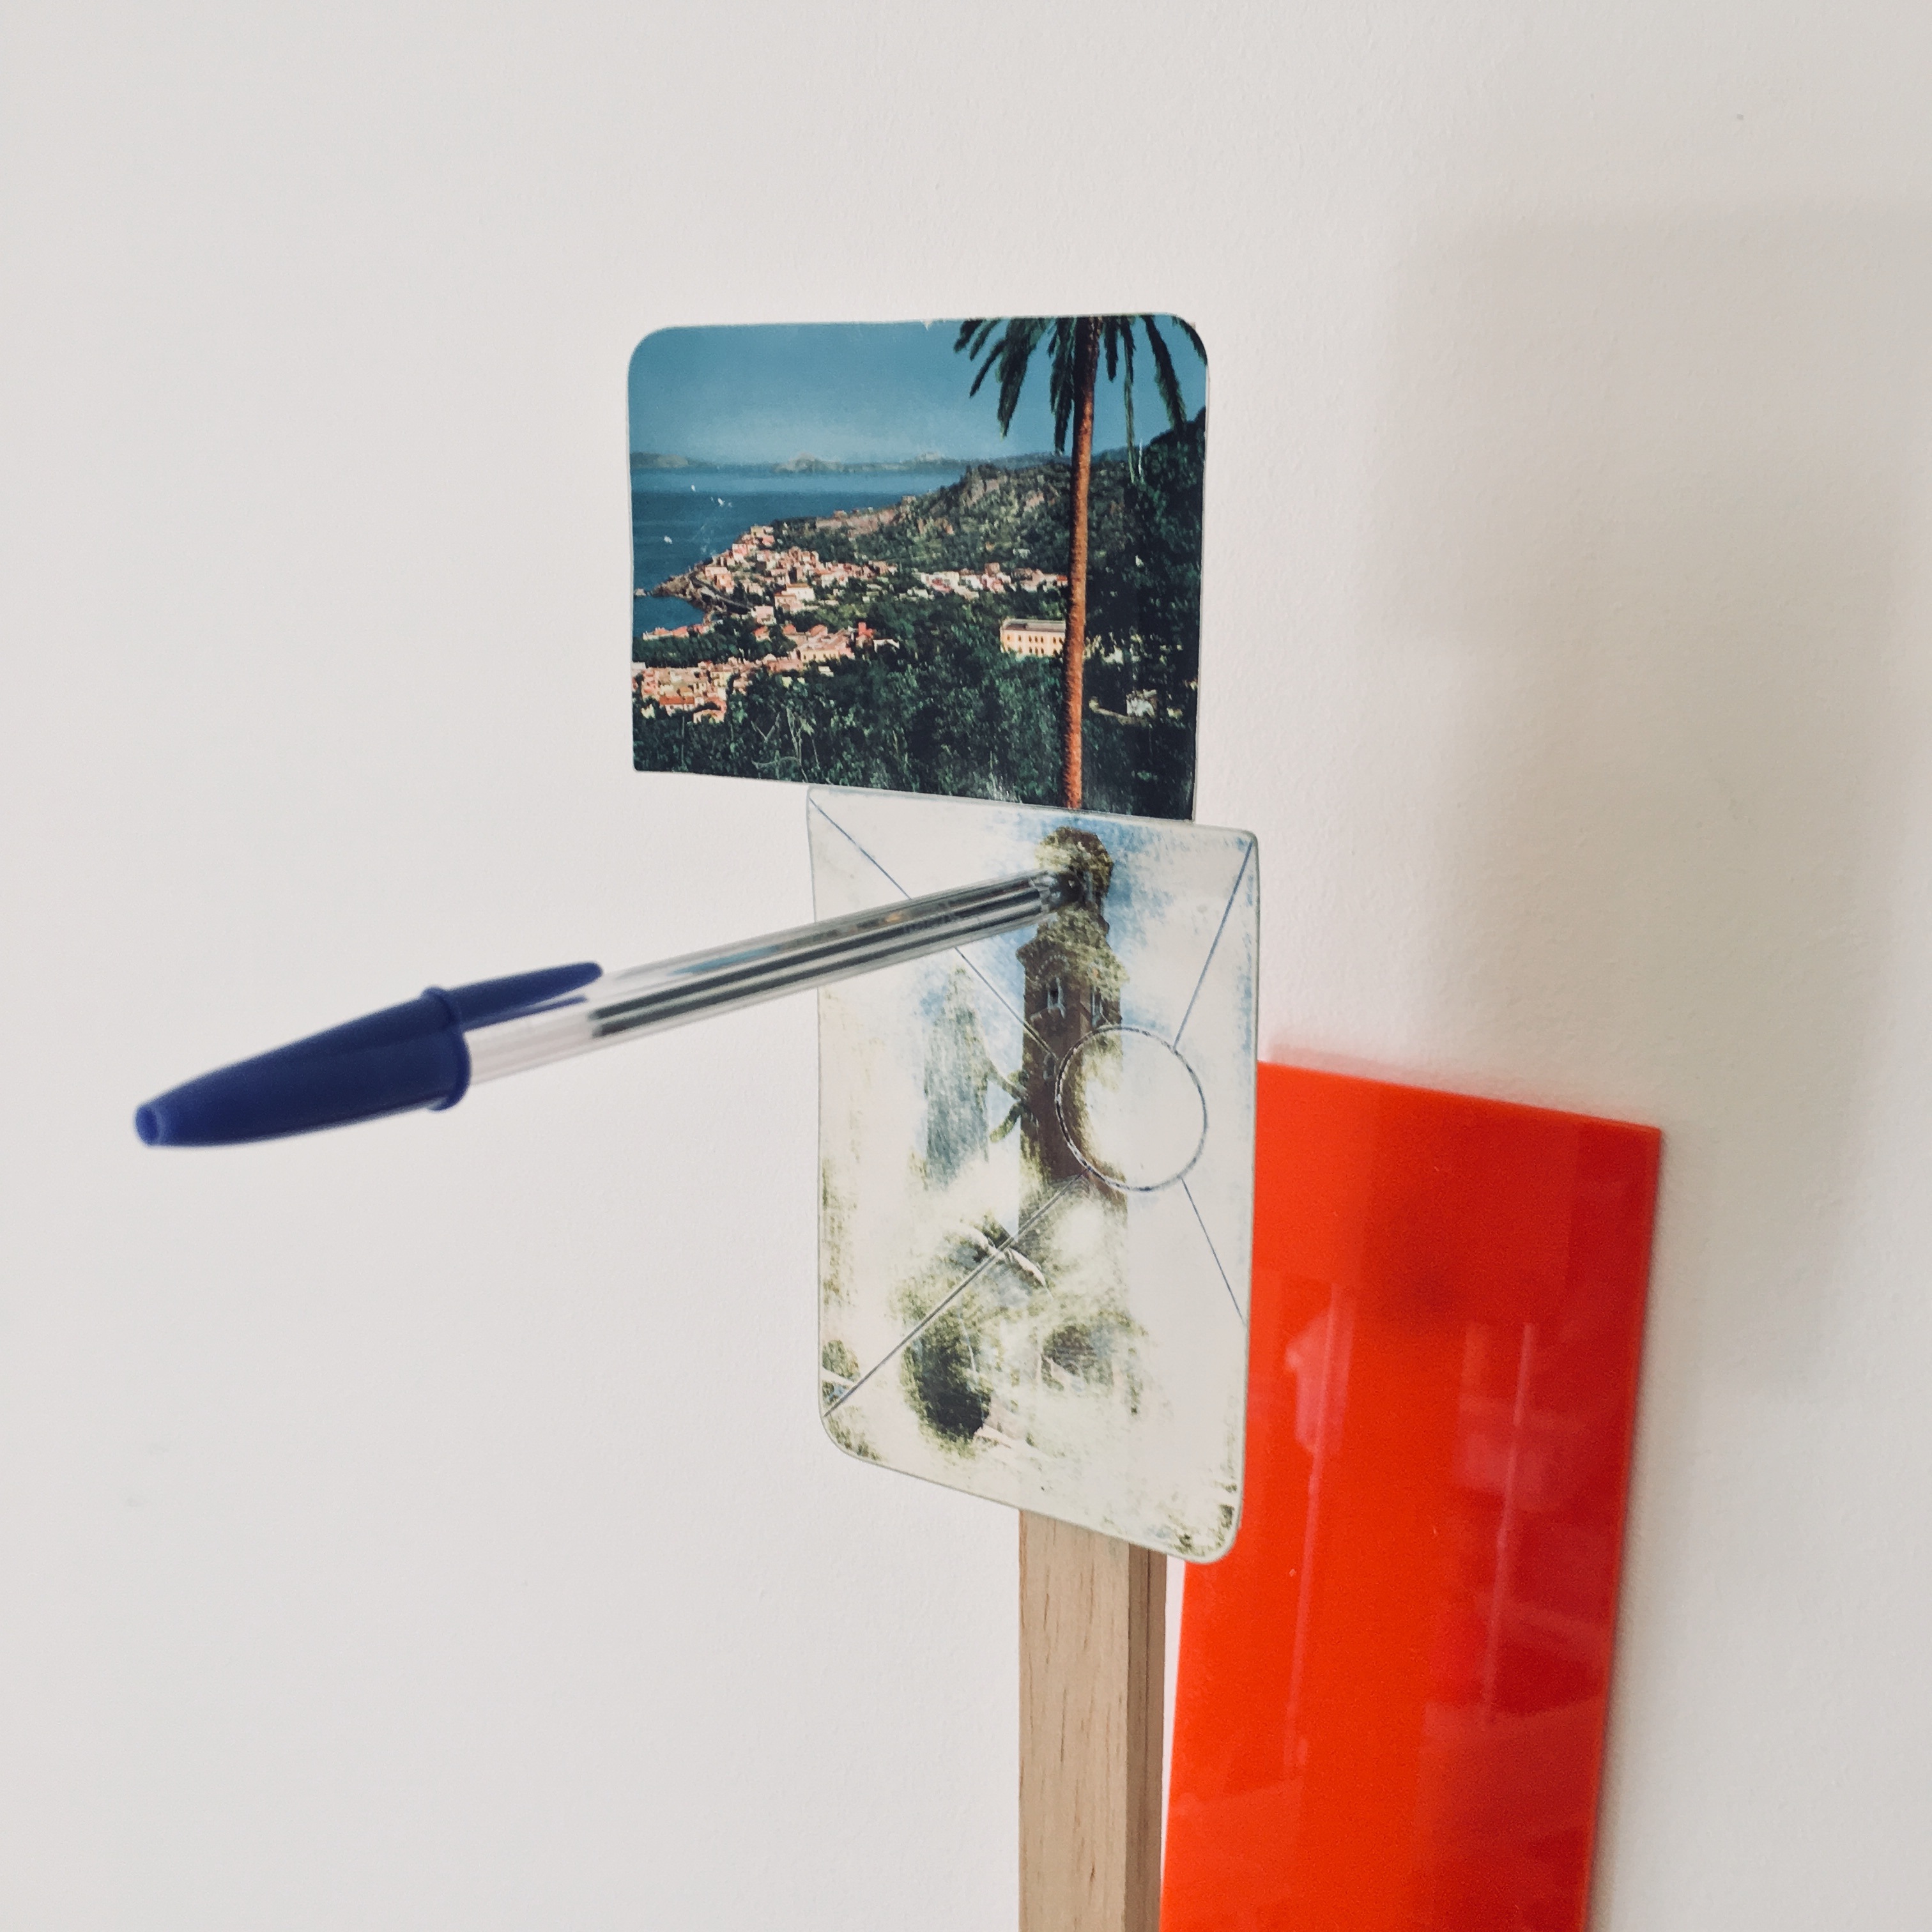 Gê Orthof, Máquinas mínimas, Casamicciola panorama, Acrílico, postais, balsa e bic. Desenho assemblage, 63 x 21 x 6 cm, 2018 detalhe